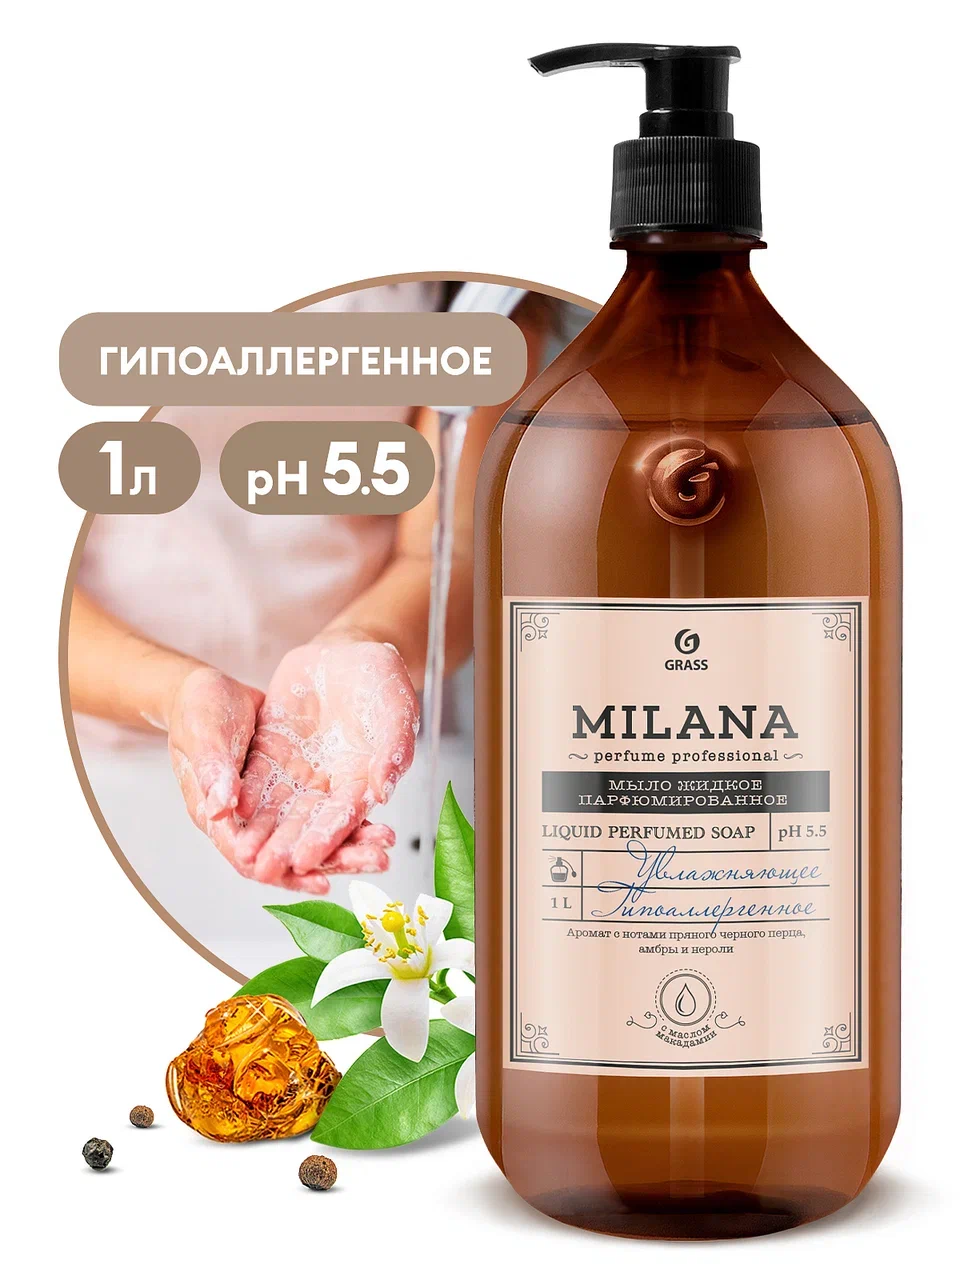 Жидкое парфюмированное мыло Milana Perfume Professional, 1 л